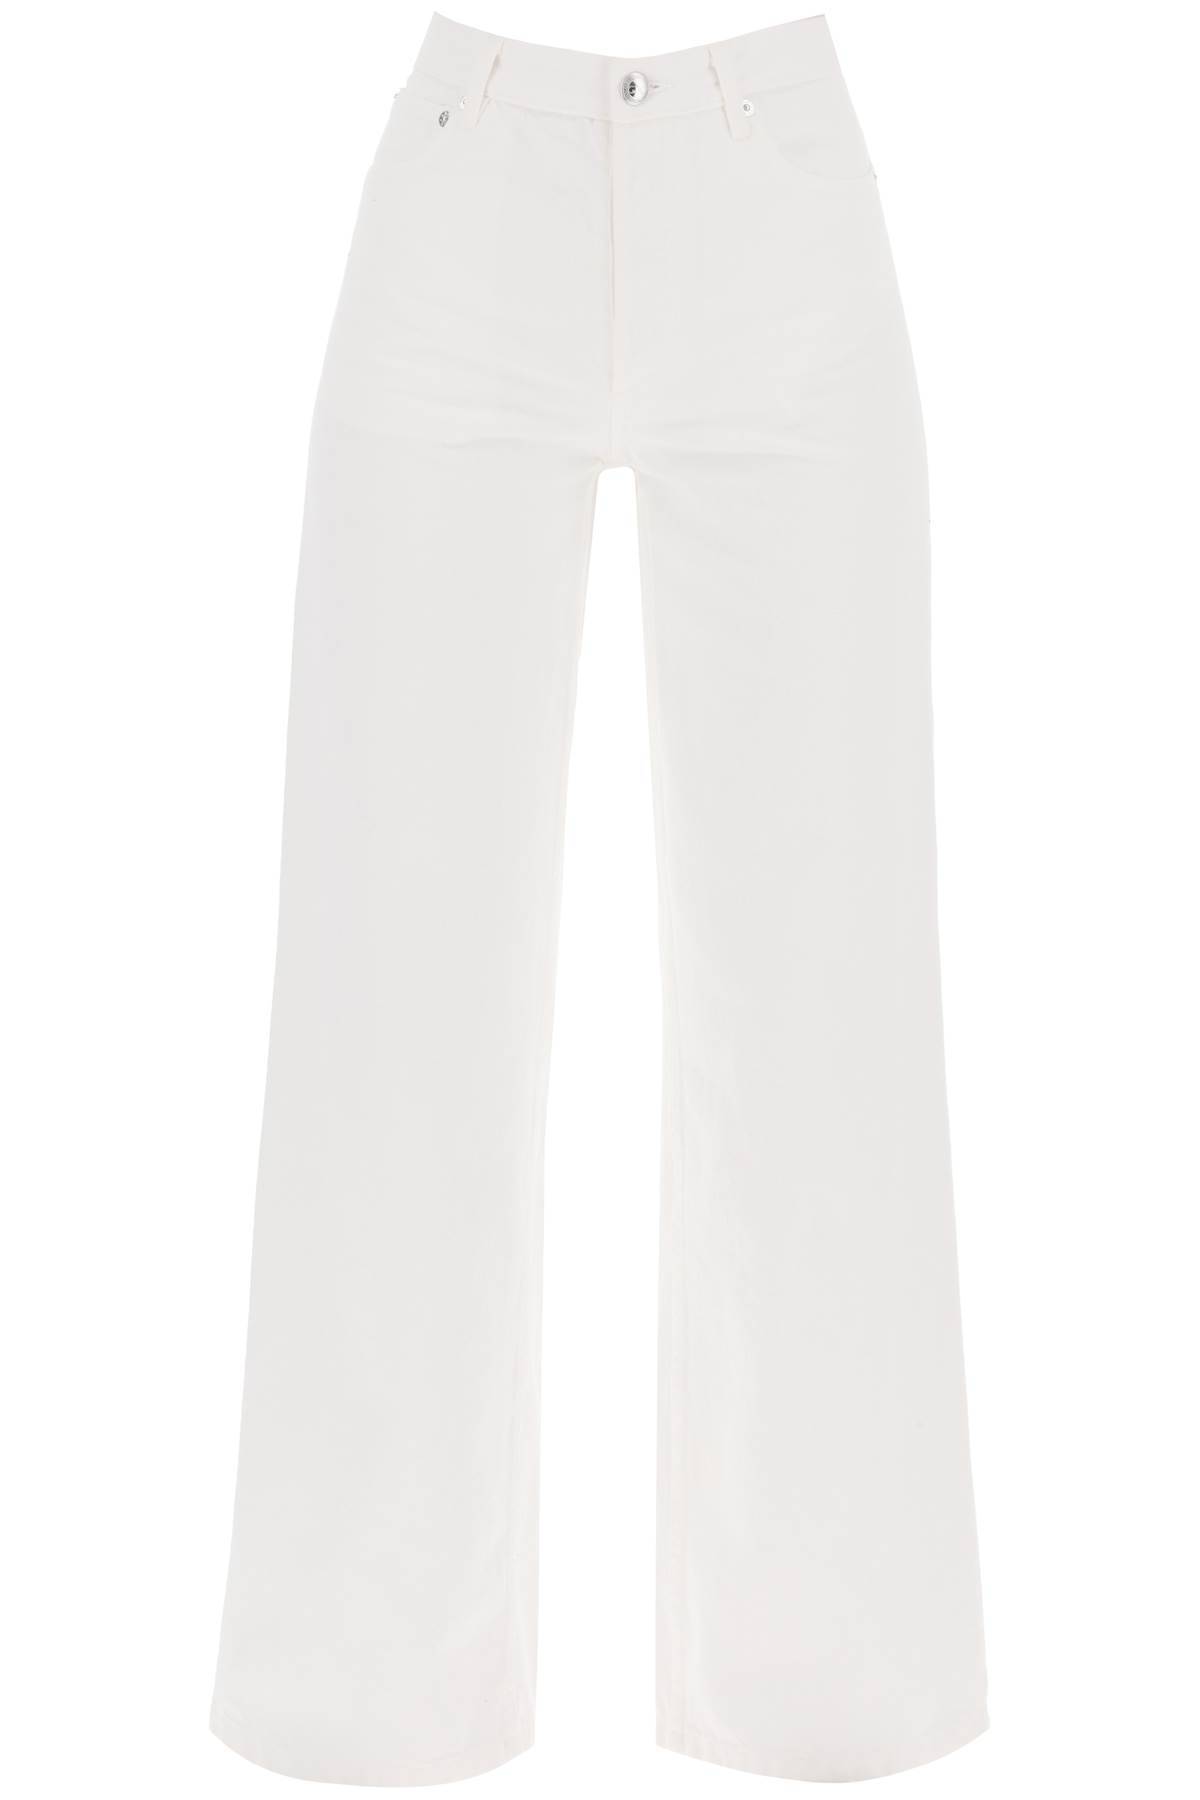 Shop Apc Elisabeth Jeans In White